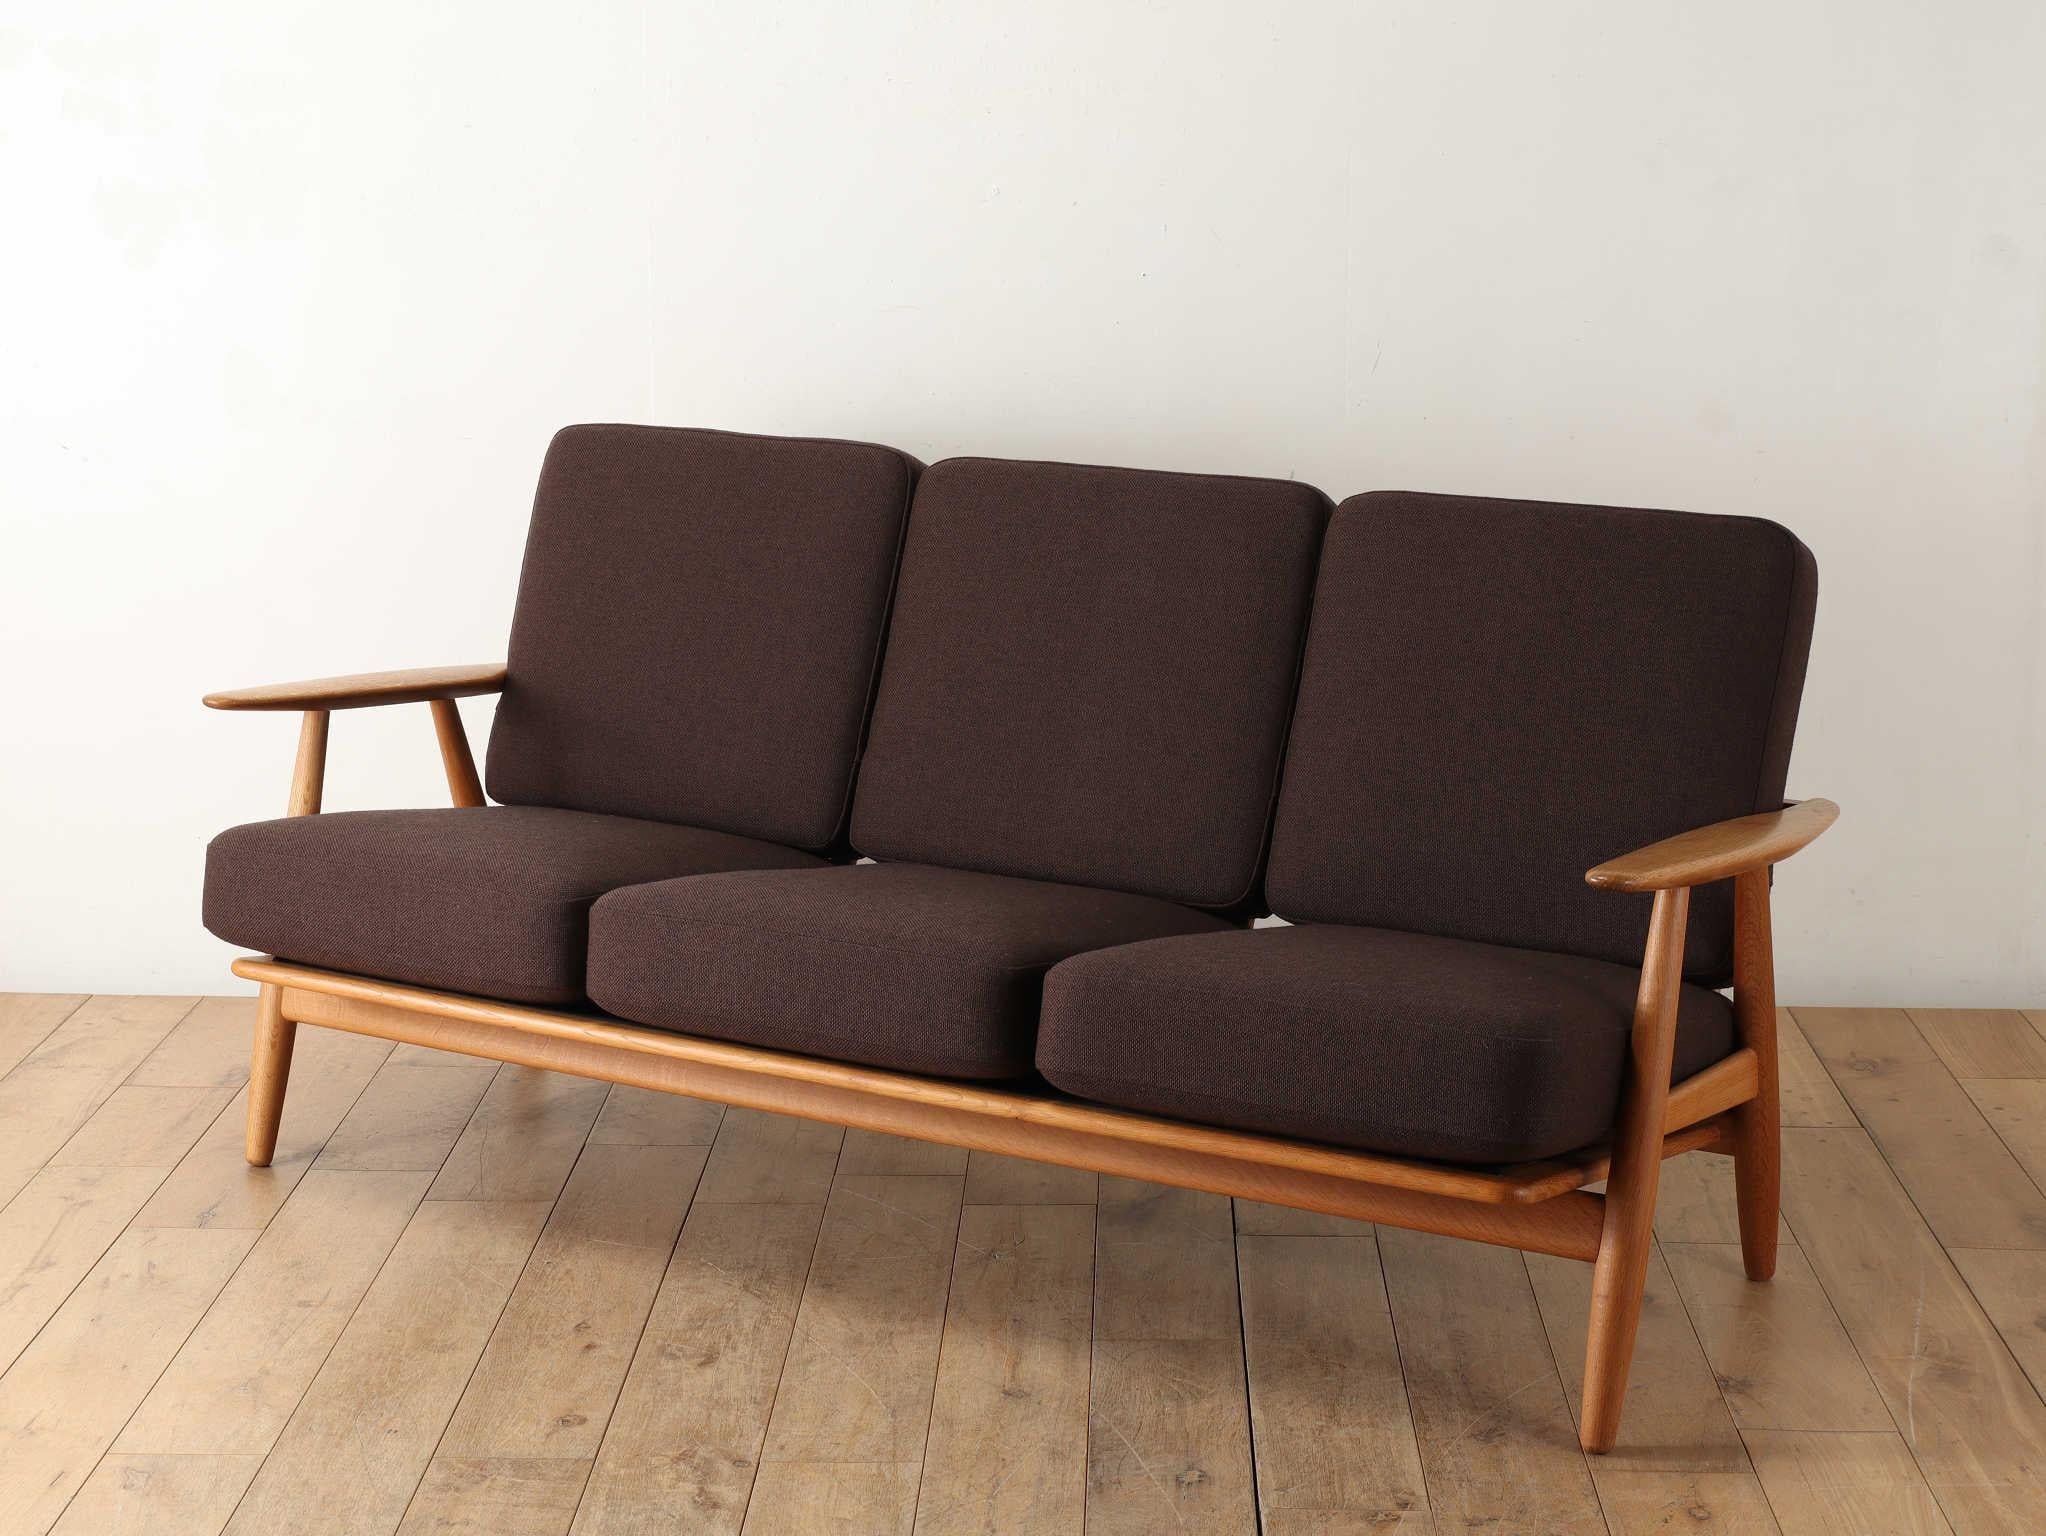 Hans J. Wegner. Il aurait conçu plus de 500 chaises au cours de sa vie et fut l'un des maîtres les plus influents de l'histoire du design mobilier danois. La série GETAMA du fabricant de matelas de lit GETAMA est l'une de ses œuvres les plus